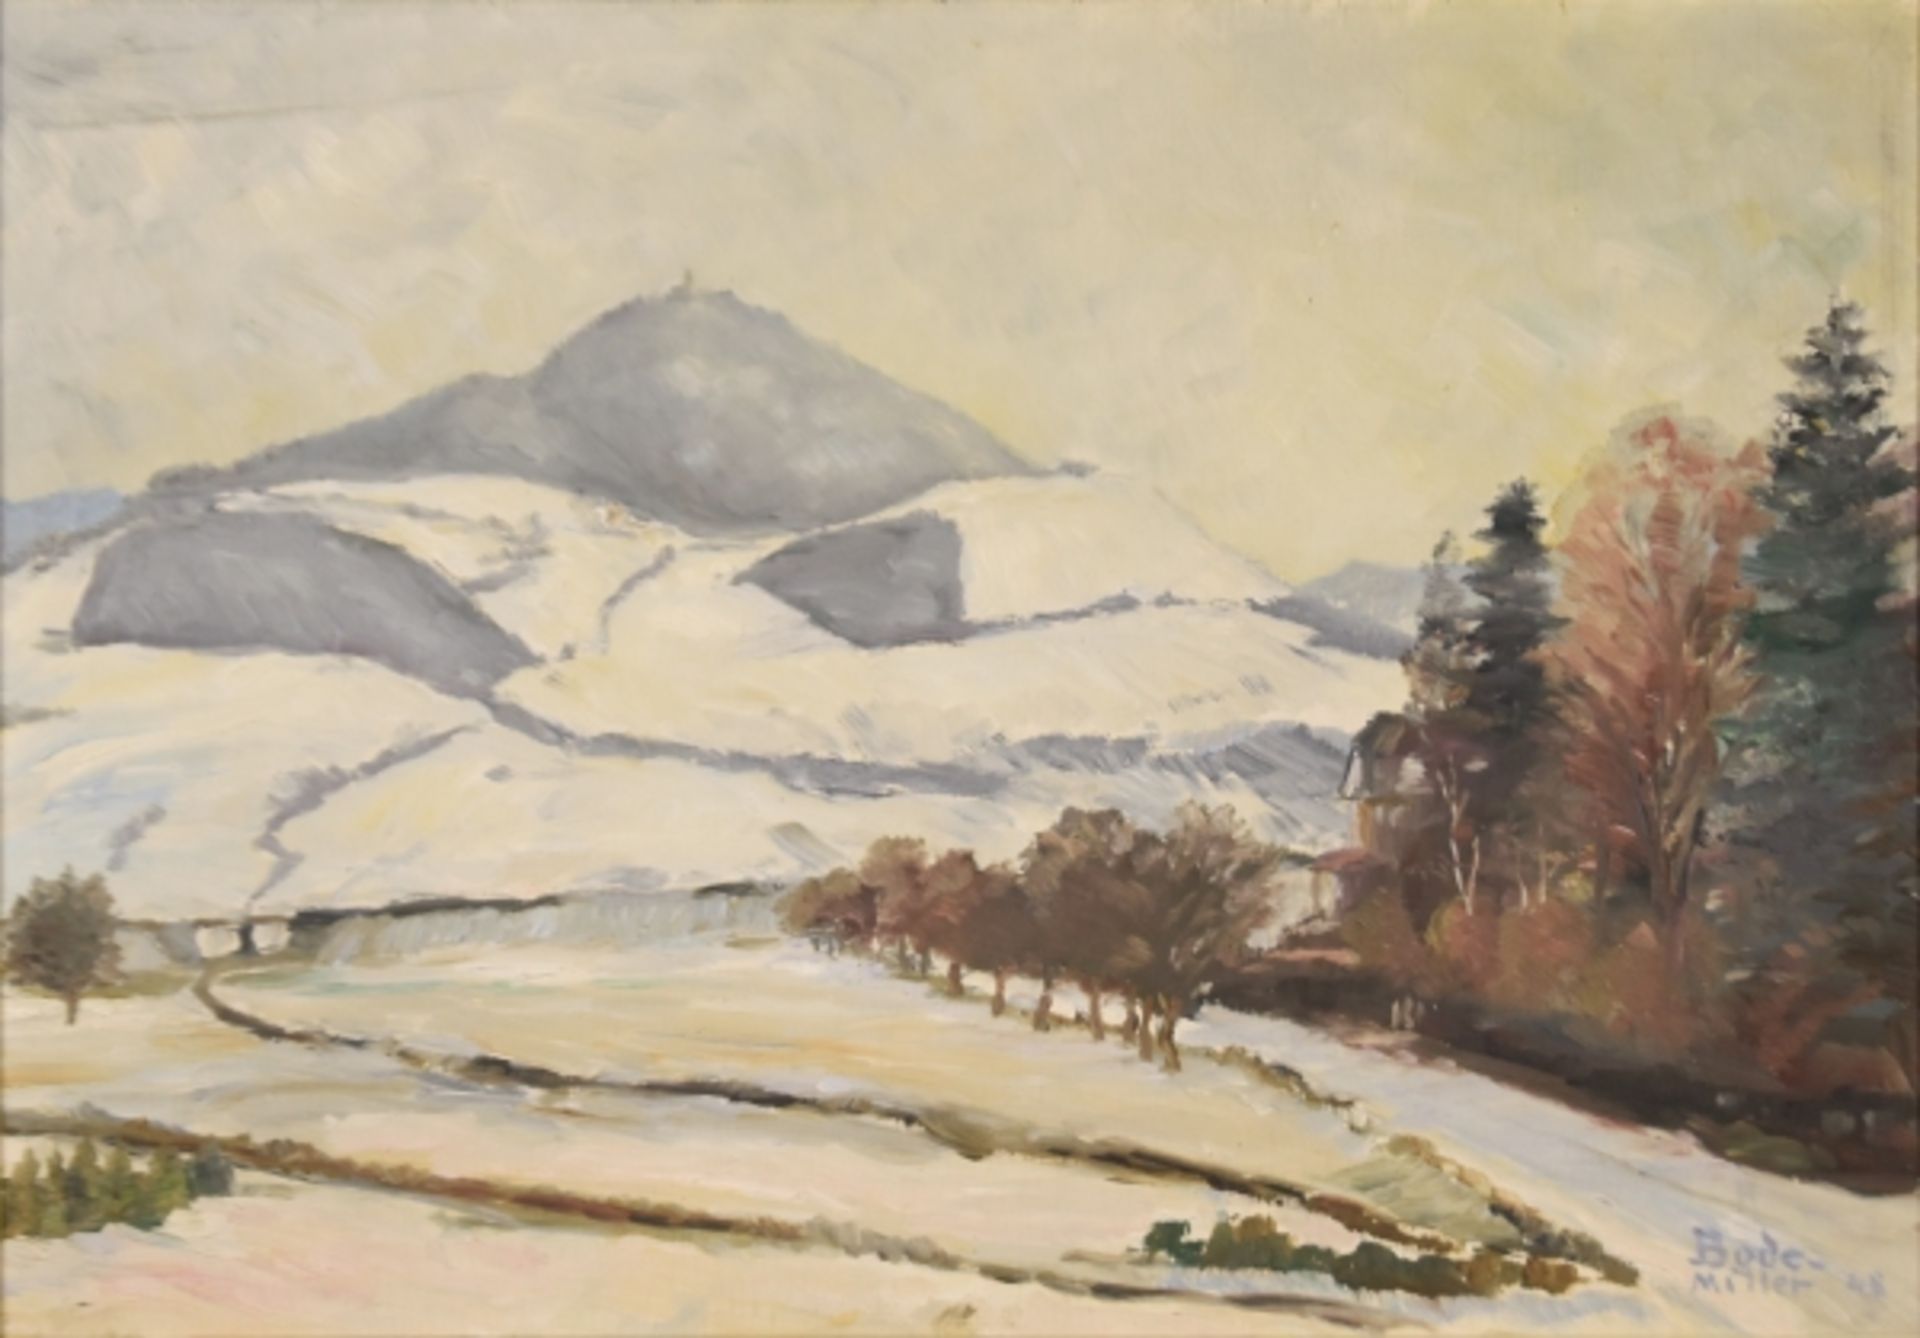 BODE-MILLER Heinrich (1878-1959) "Winterlandschaft" mit schneebedecktem Berg in weiter Landschaft,